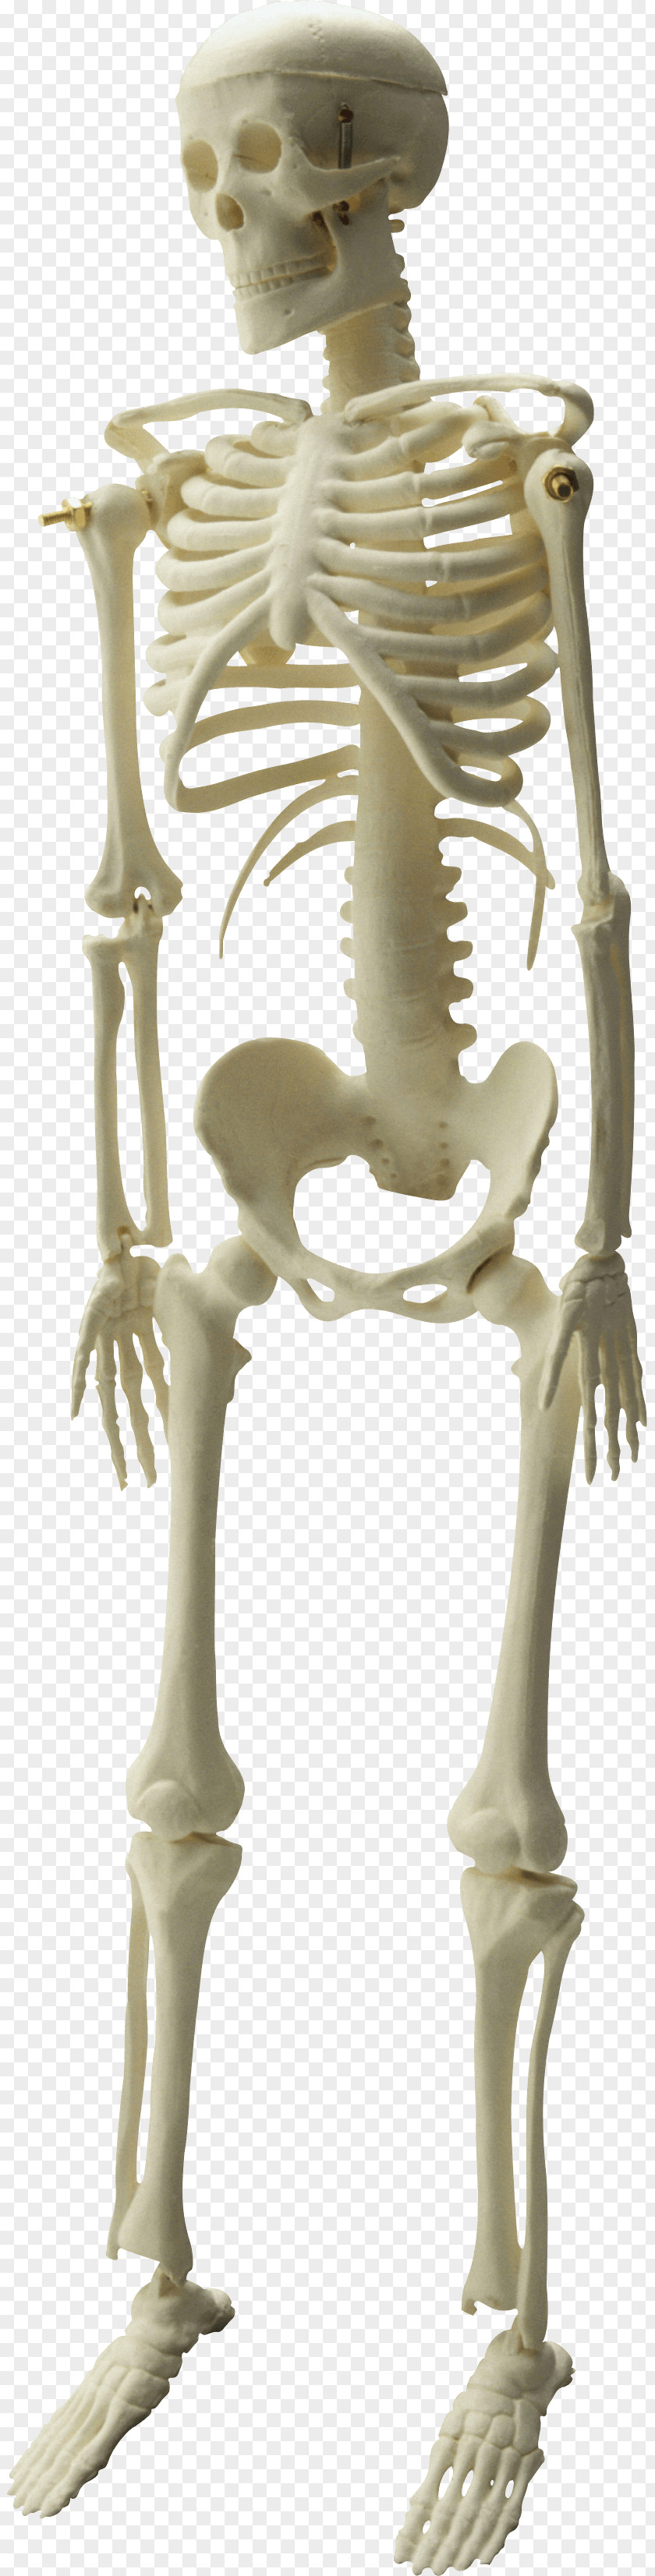 Skeleton Image File Formats Clip Art PNG